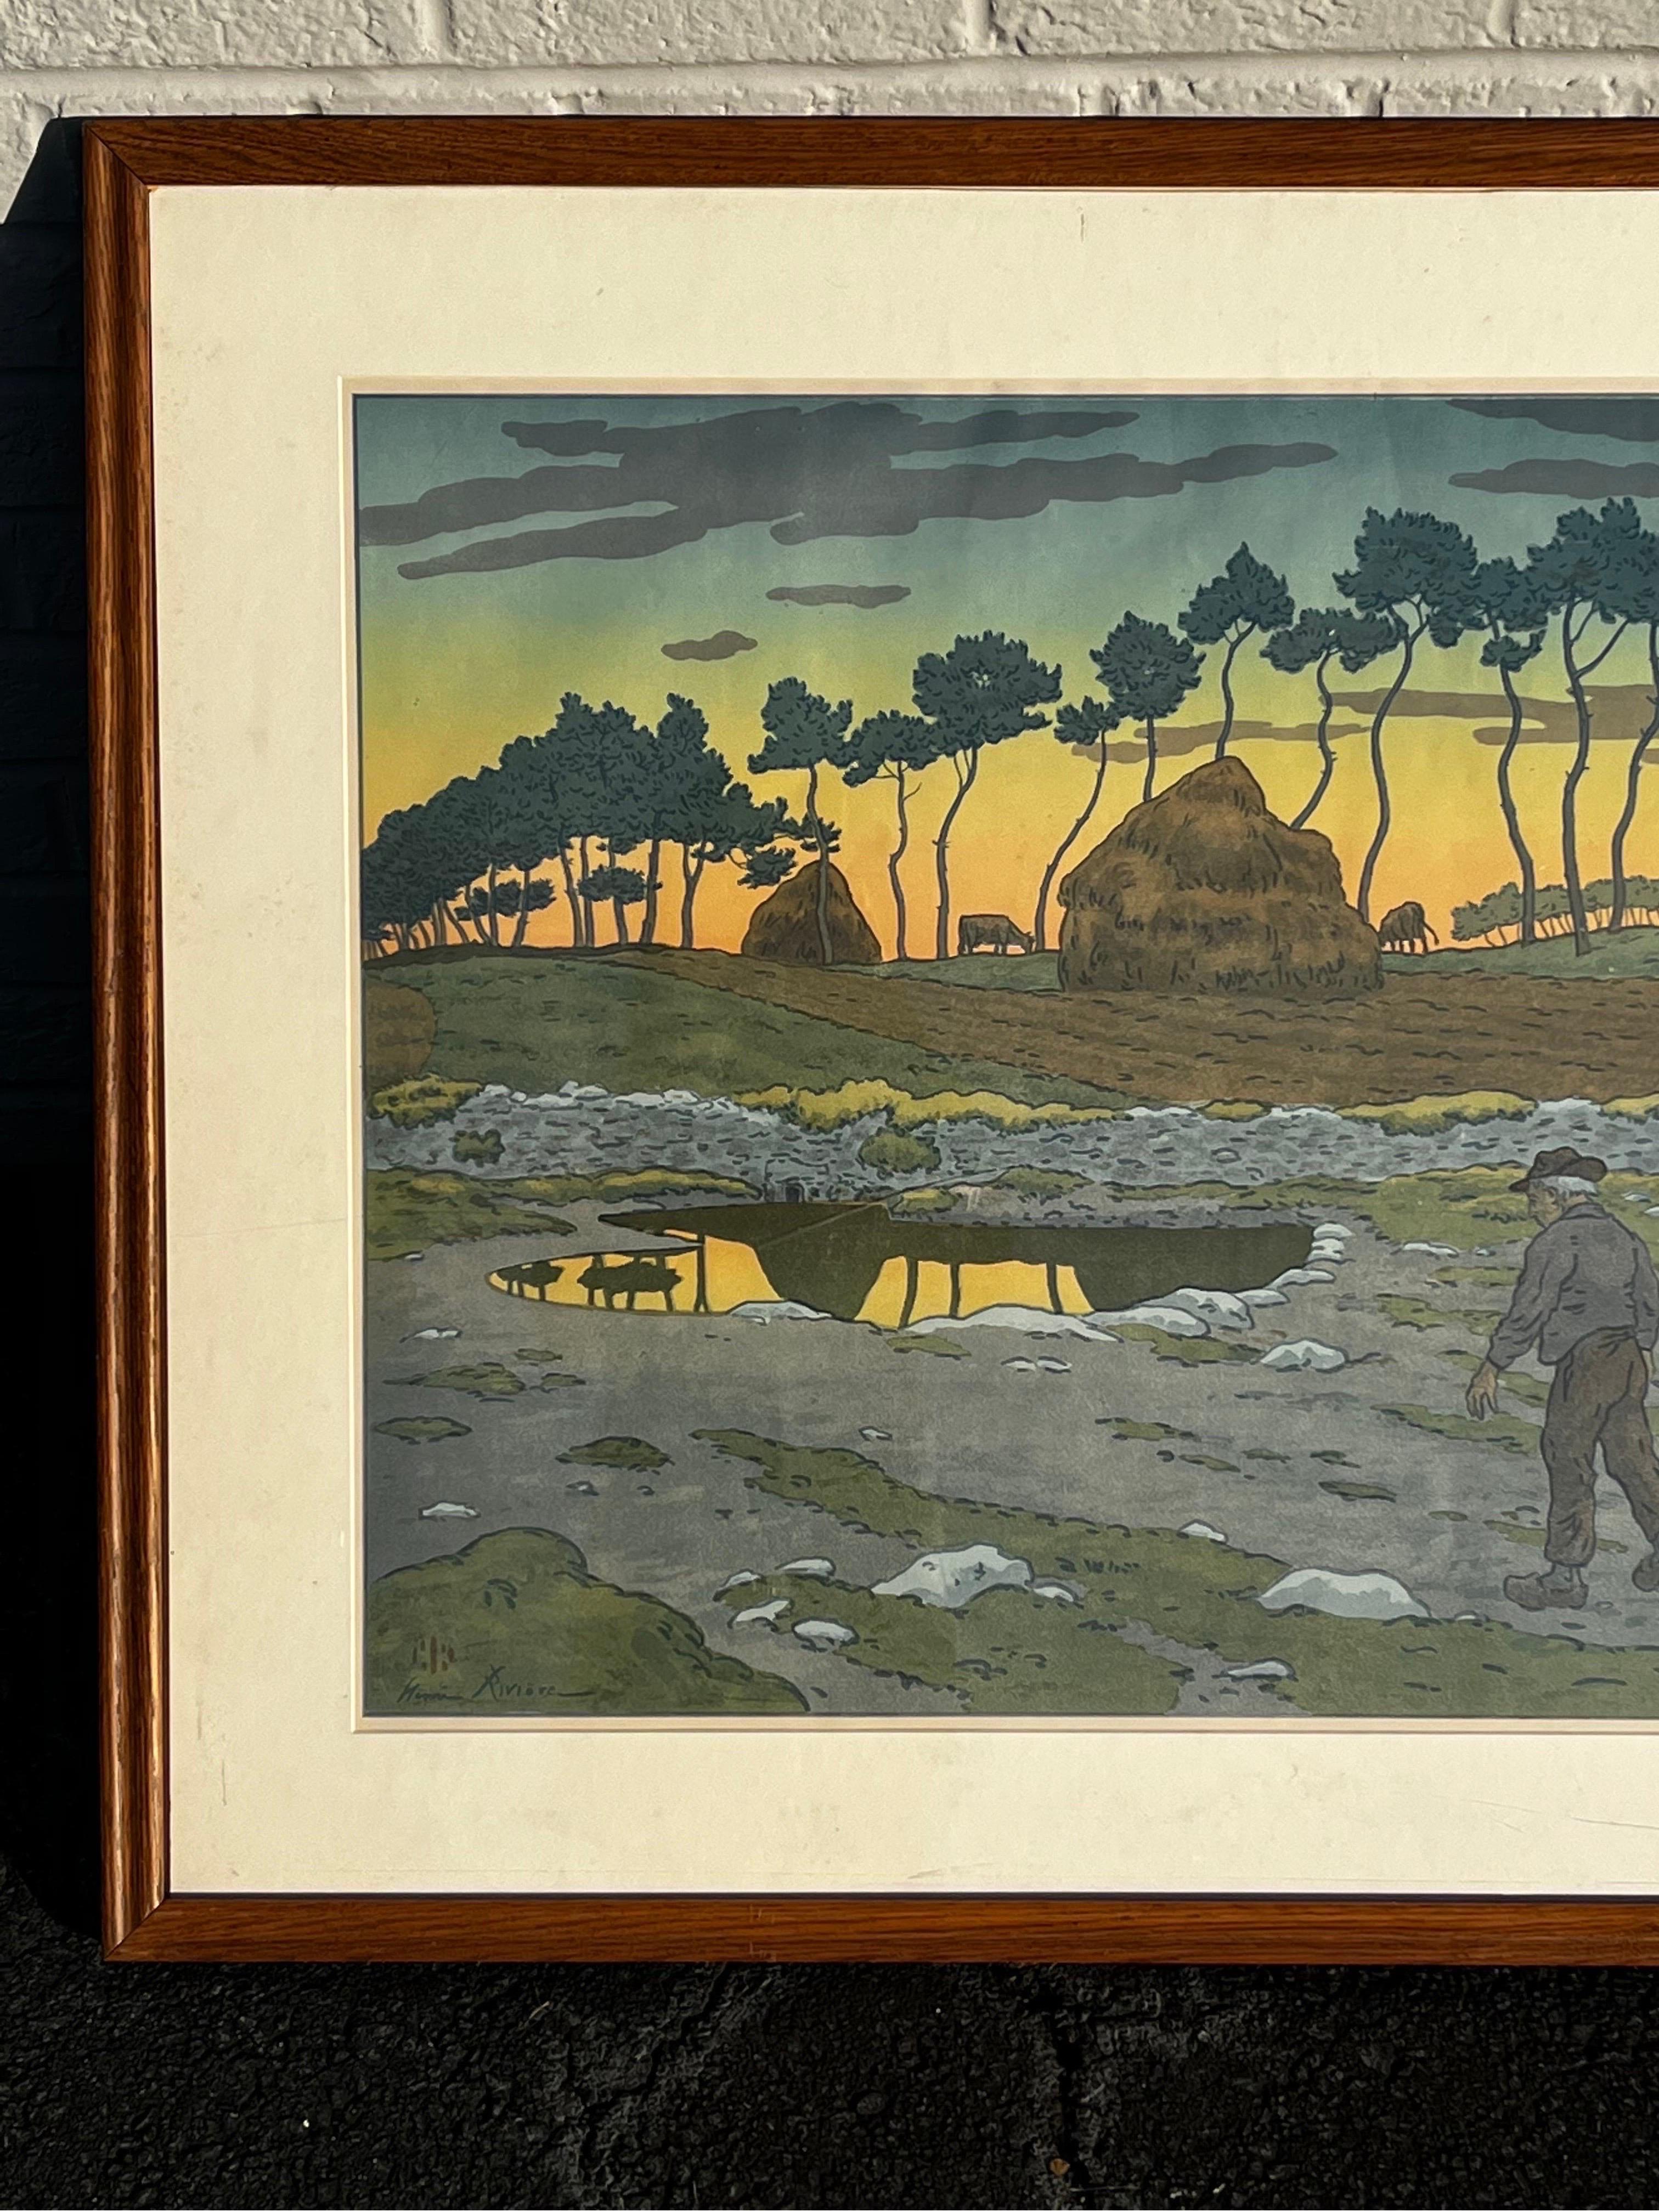 Ein monumentaler Farbdruck des französischen Künstlers Henri Riviere (1864 - 1951) aus dem späten 19. oder frühen 20. Jahrhundert. Der Druck zeigt einen Mann und sein Pferd in der französischen Landschaft, Heuhaufen sind zu sehen. Der Stil ist